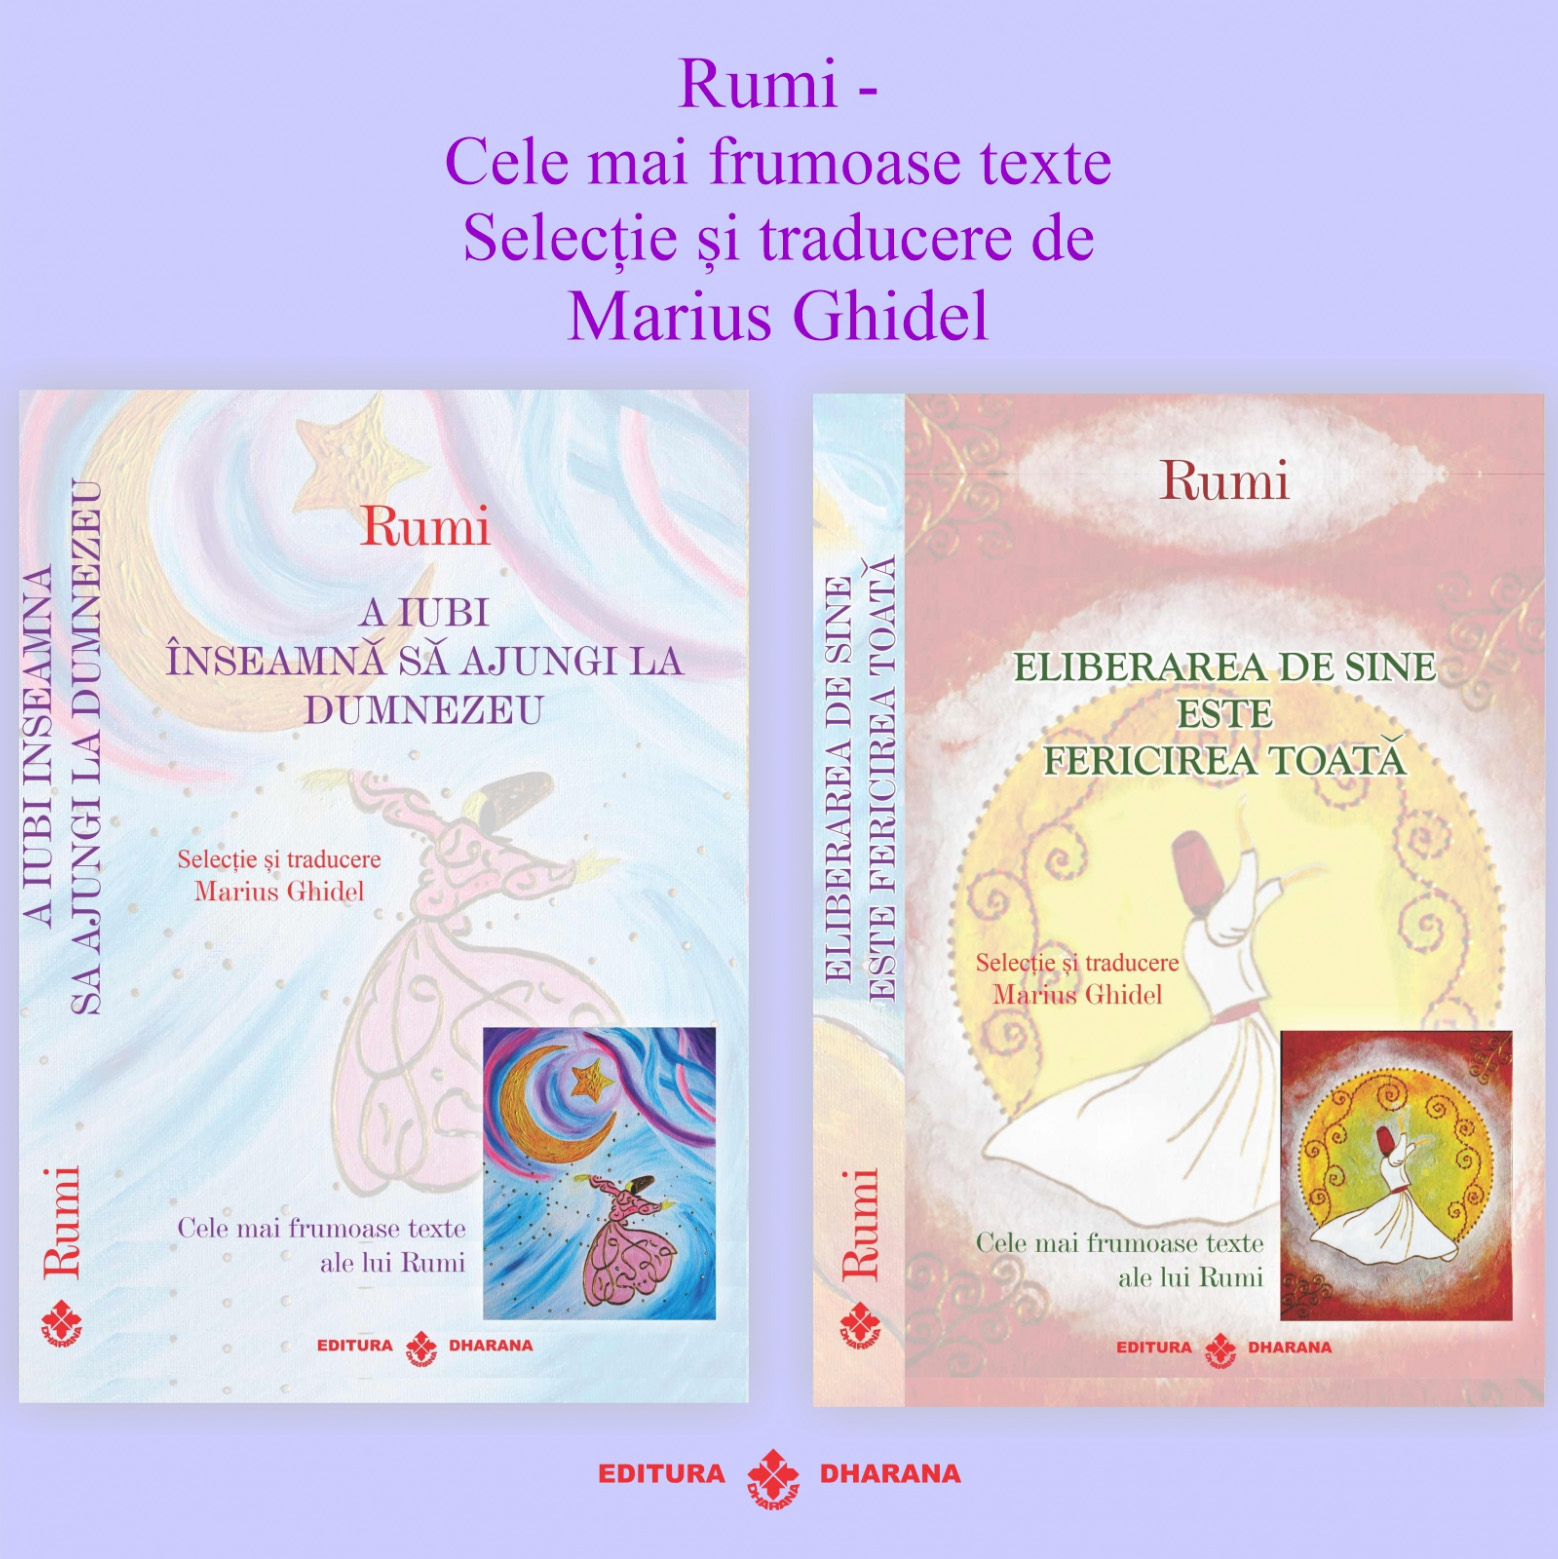 Set carti Rumi – Cele mai frumoase texte: A iubi inseamna sa ajungi la Dumnezeu / Eliberarea de sine este fericirea toata | Rumi